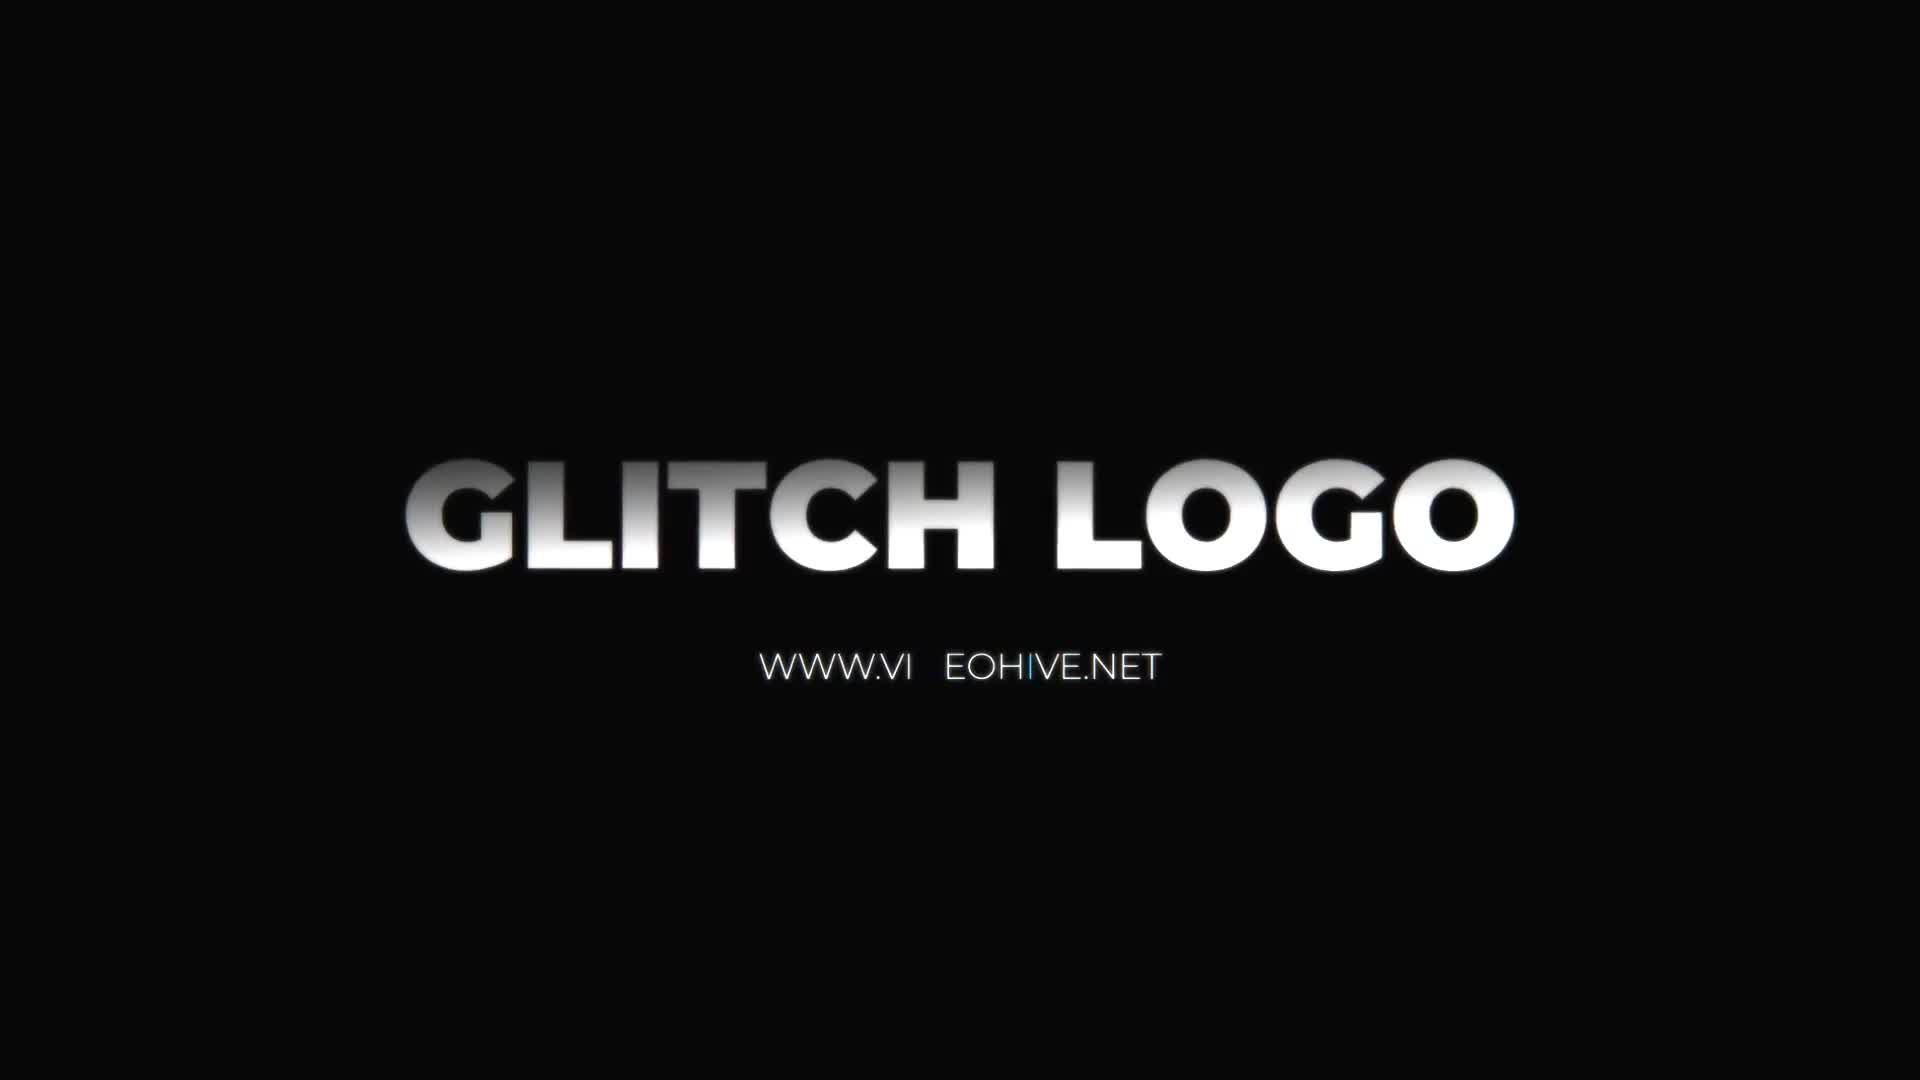 Glitch Logo Mogrt Videohive 22871341 Premiere Pro Image 8